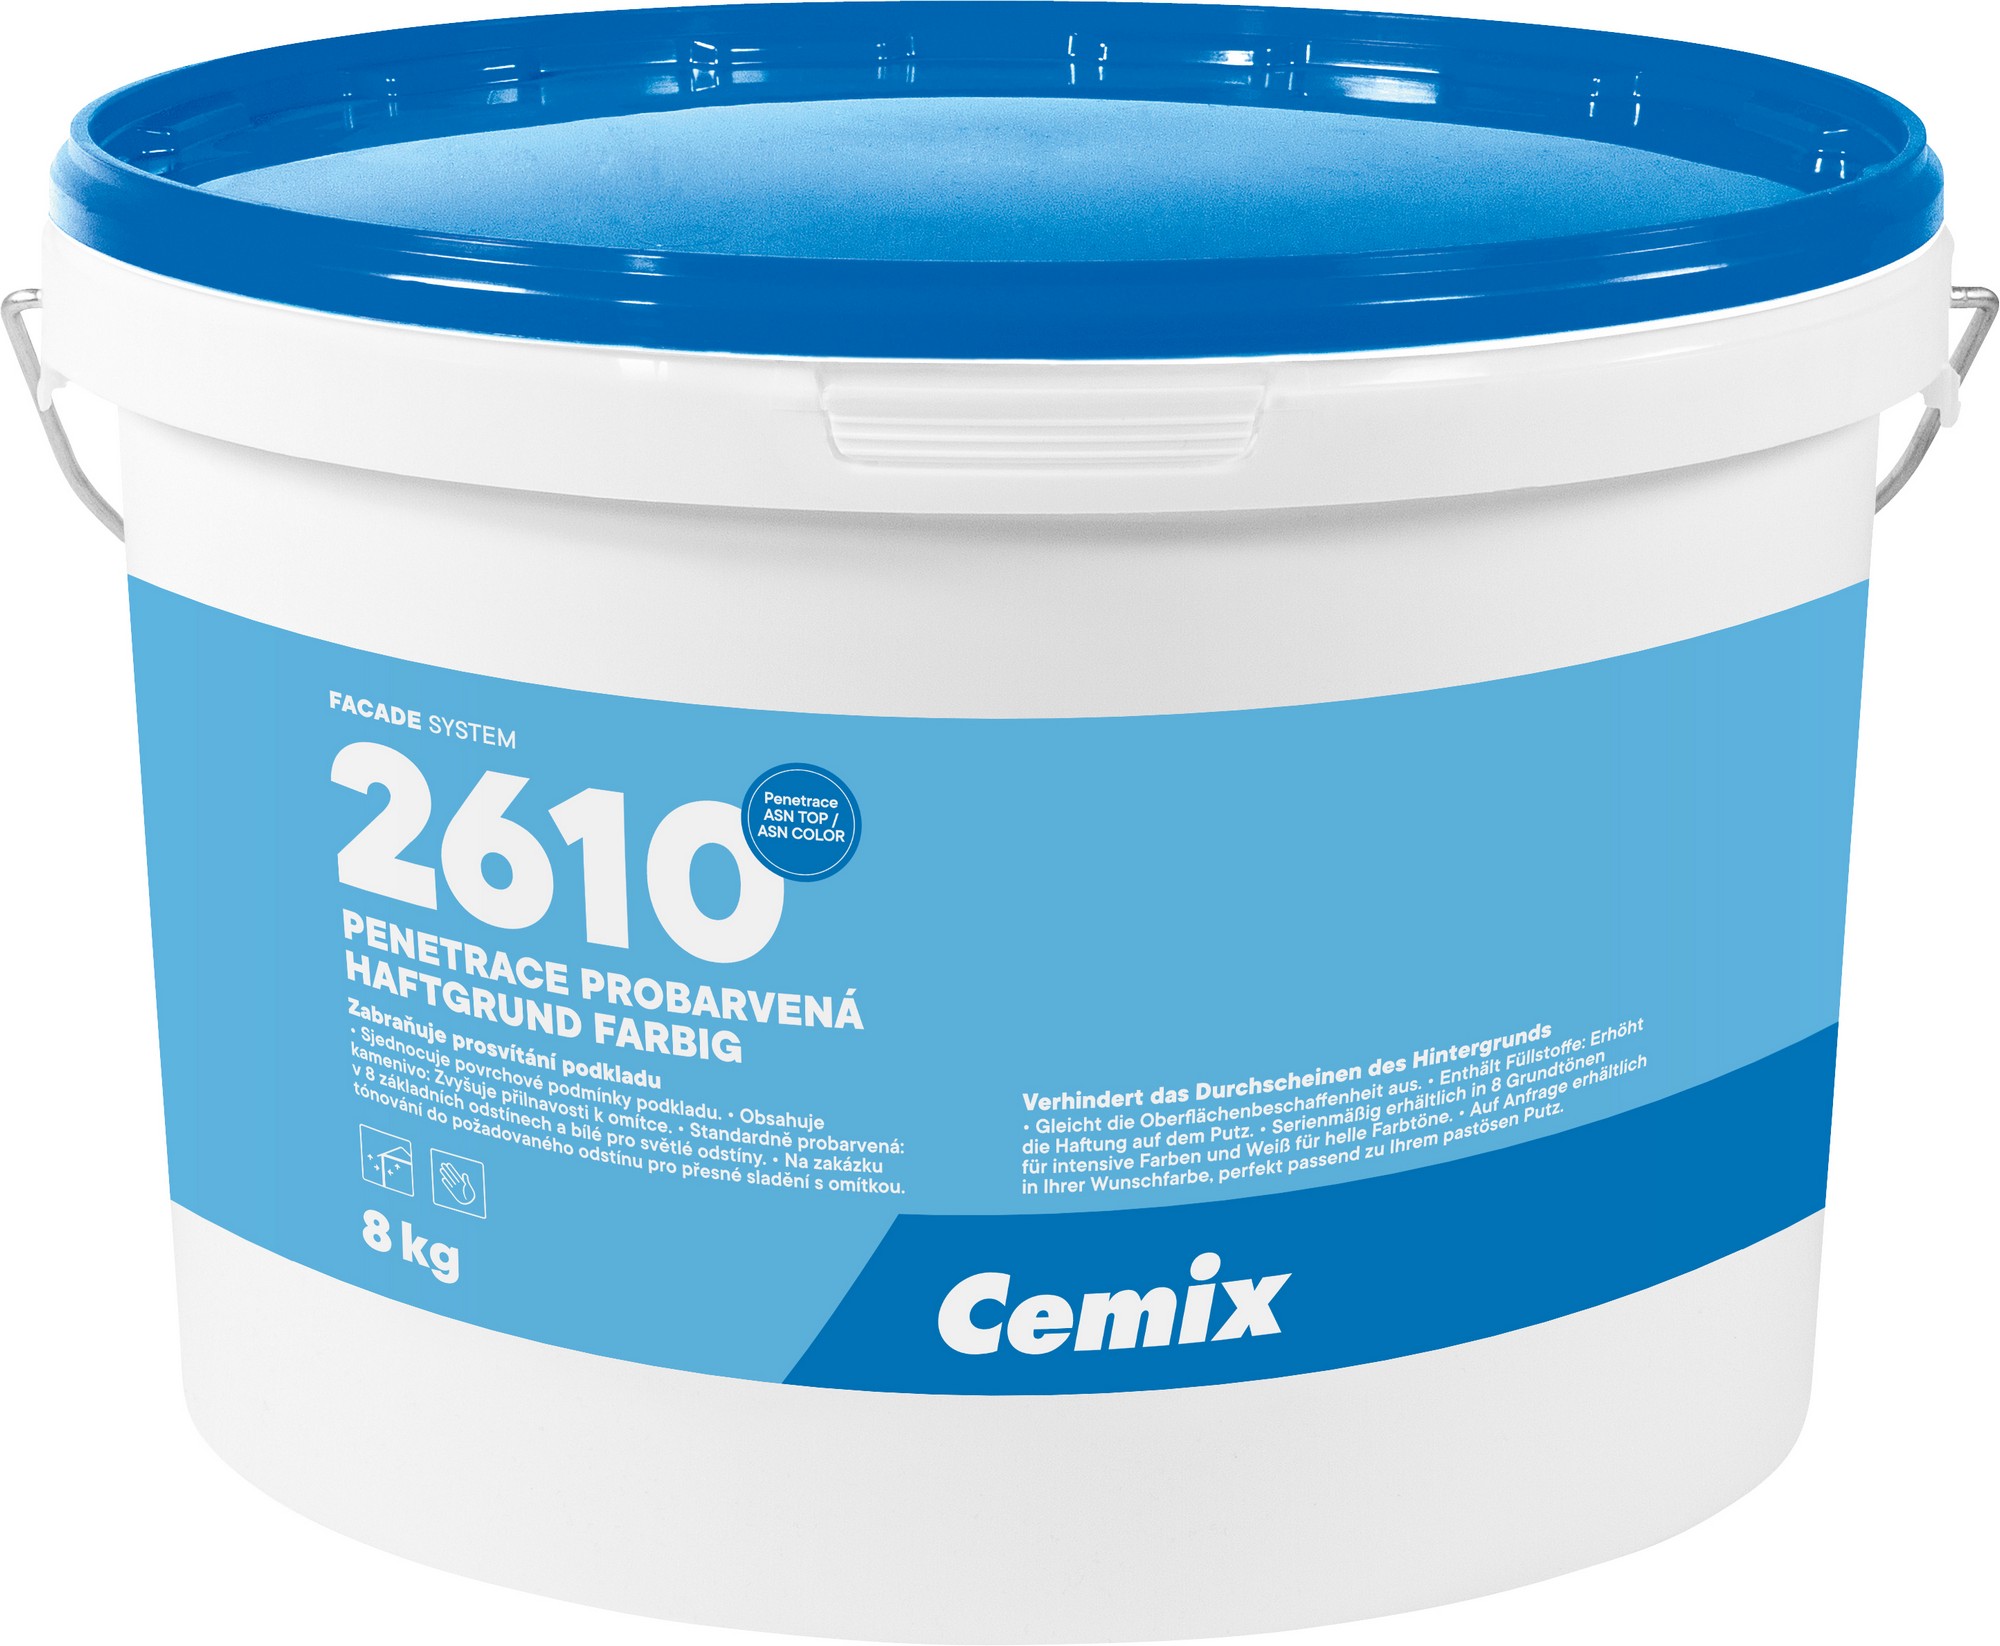 Penetrace probarvená Cemix 2610 oranžová 8 kg CEMIX